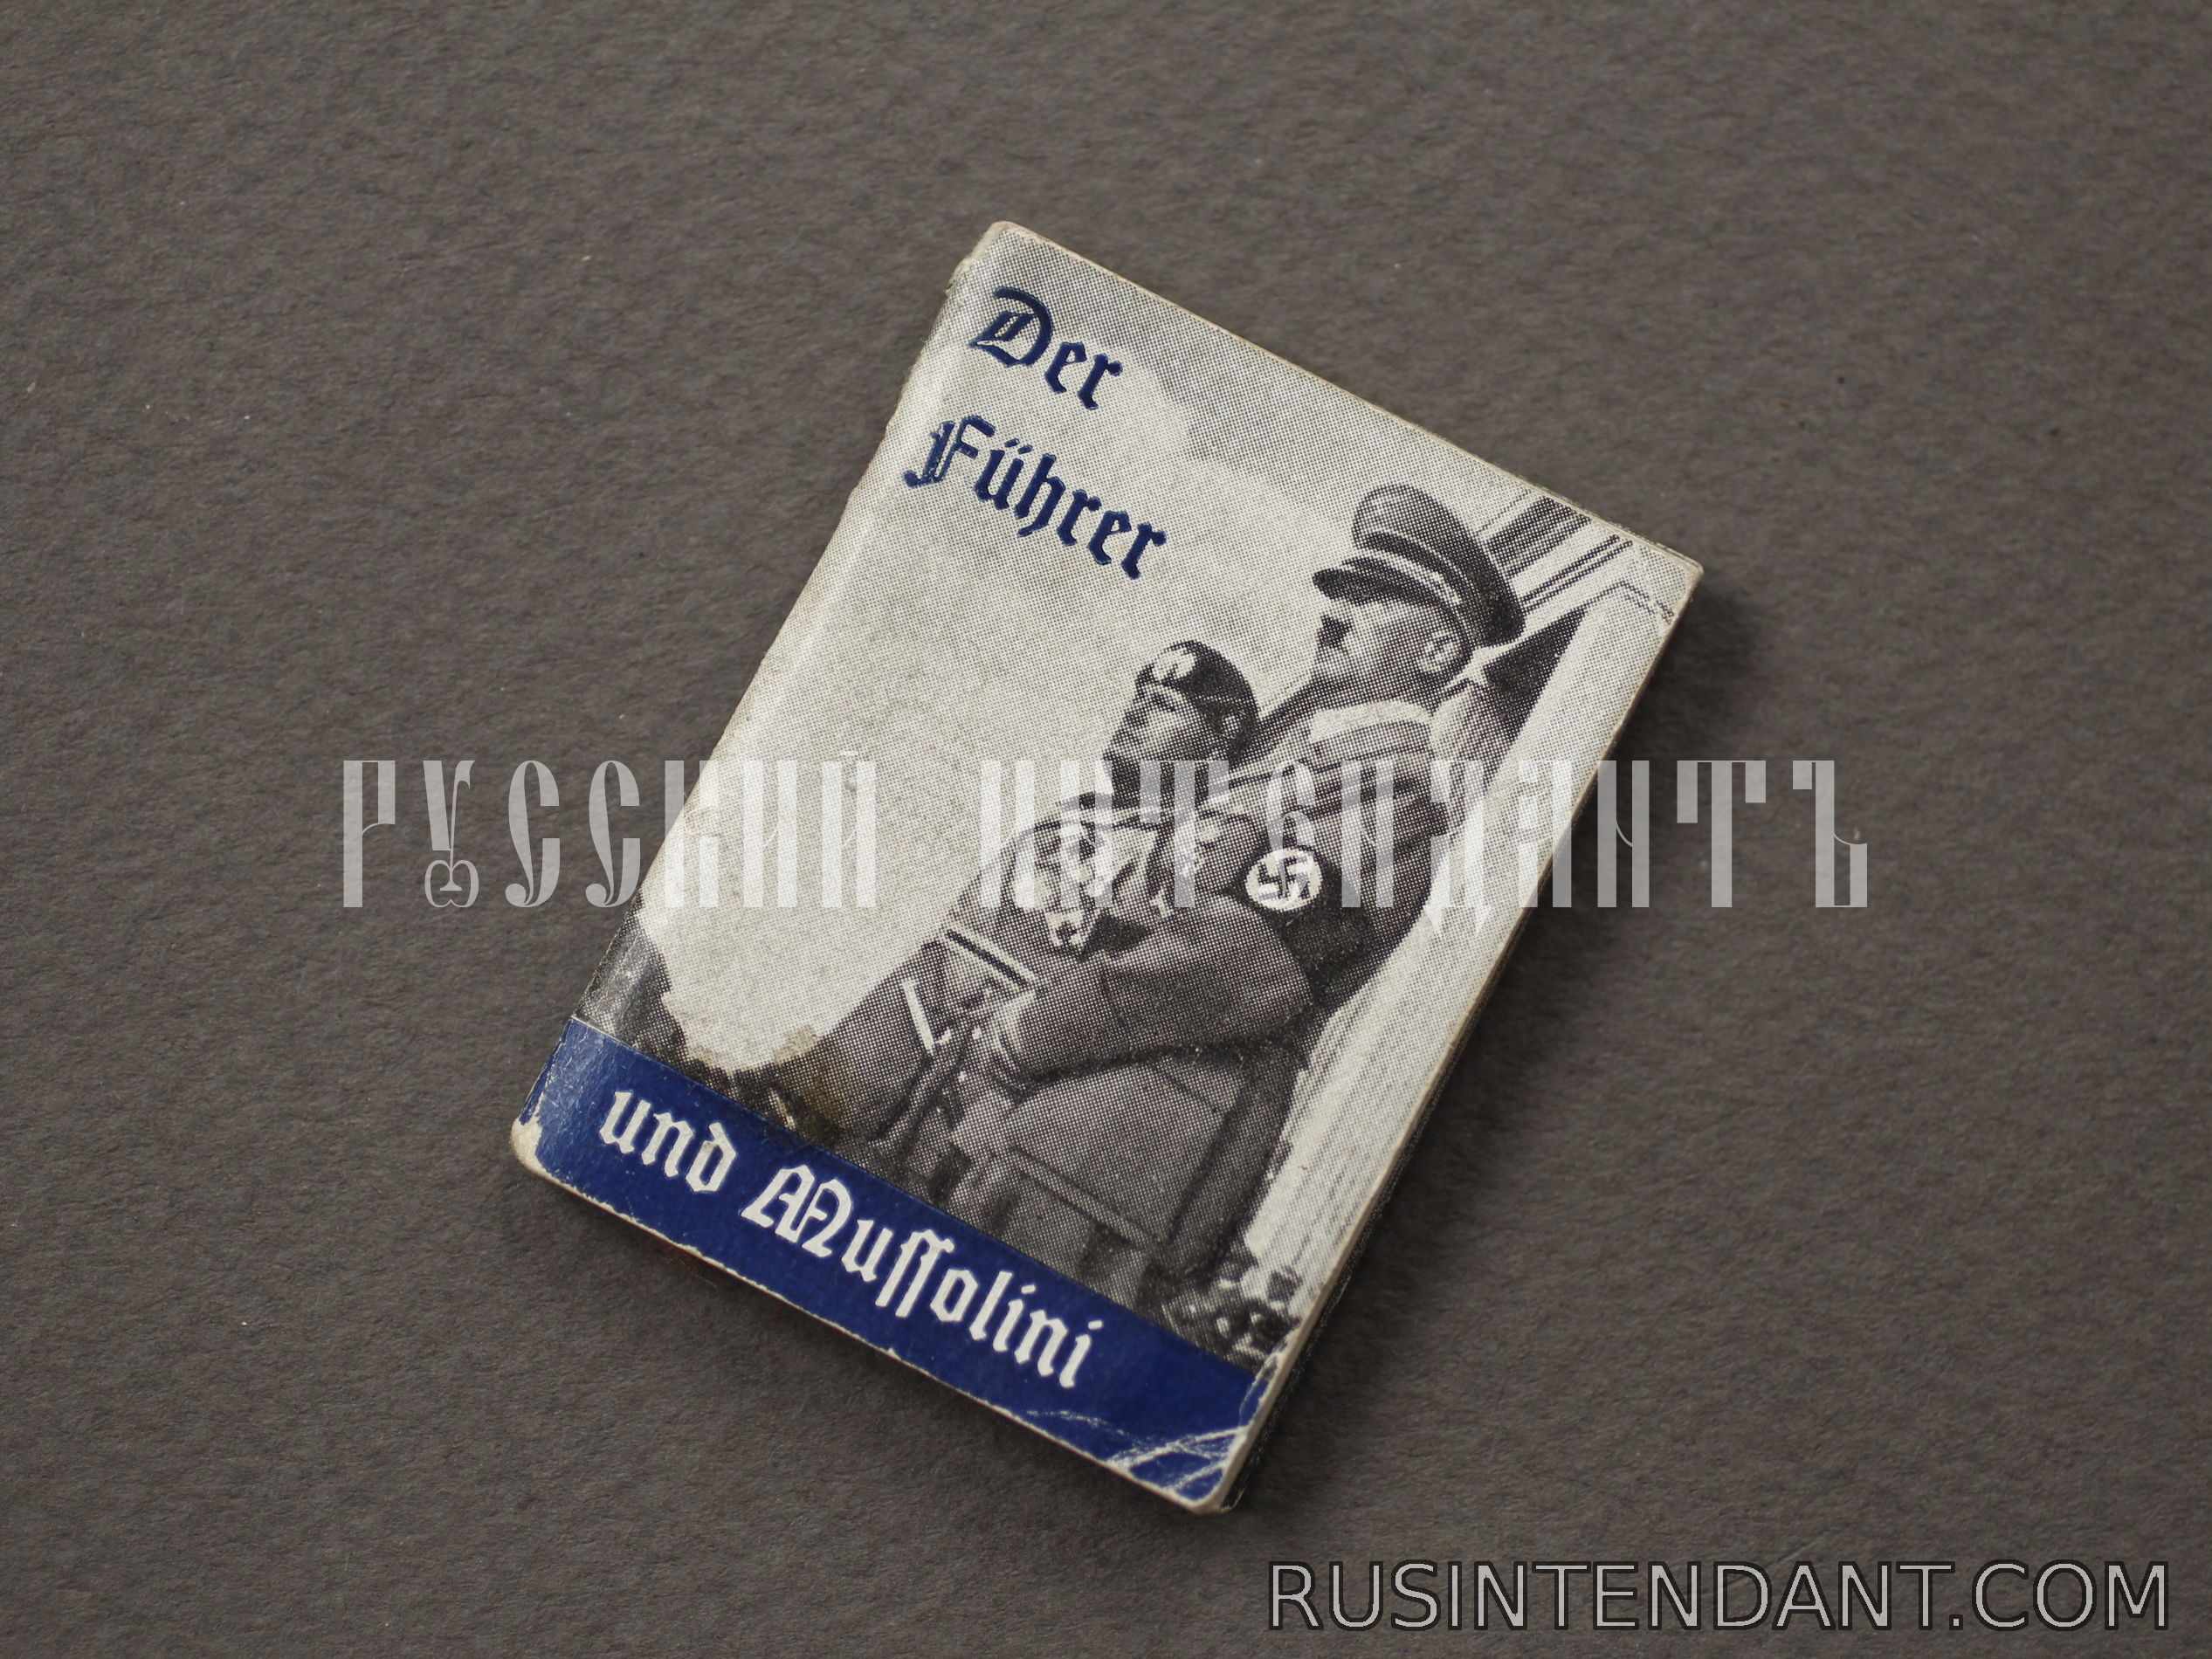 Фото 1: Журнал "Фюрер и Муссолини" 